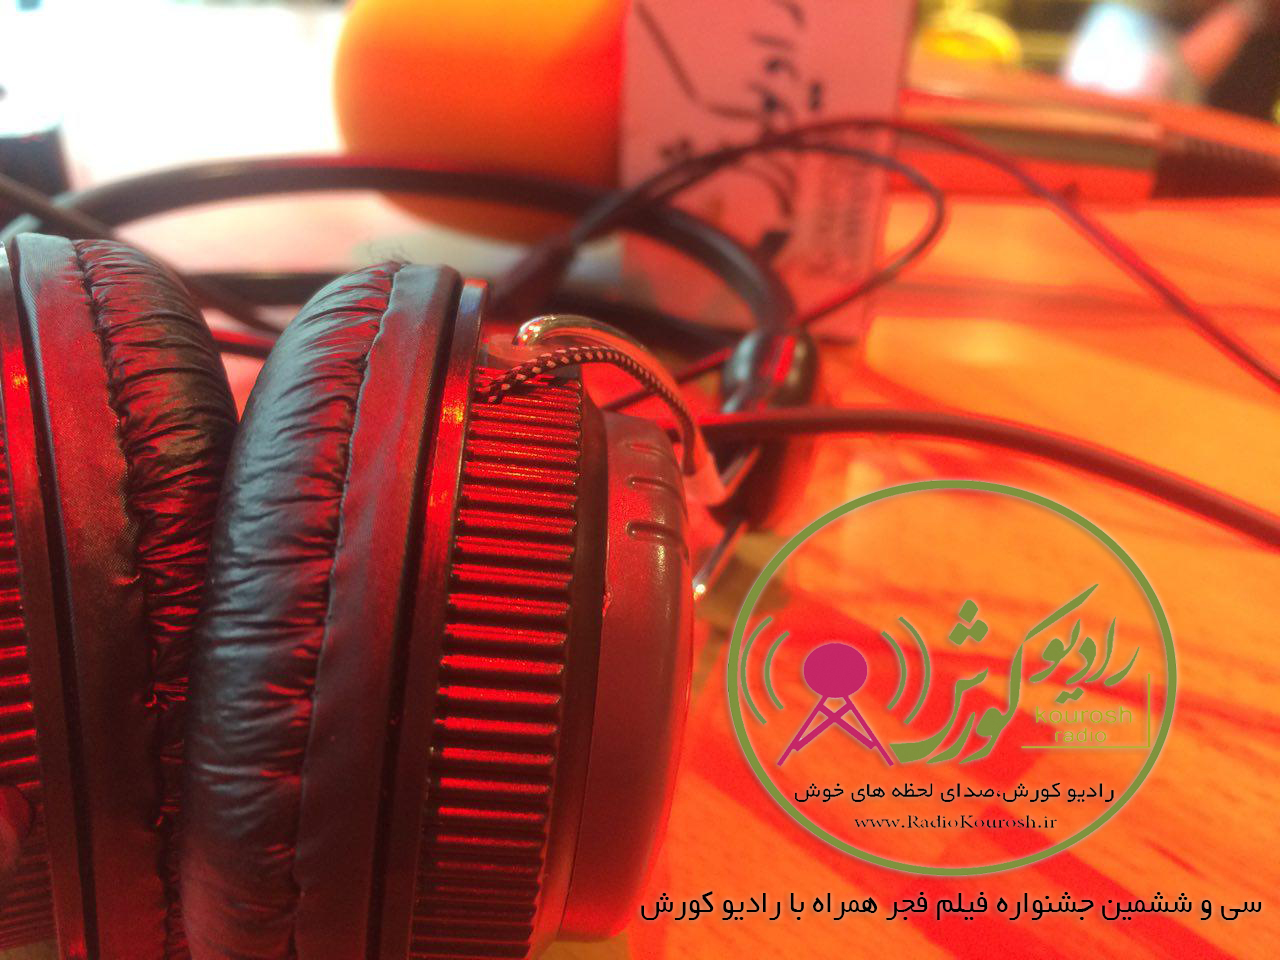  جشنواره فیلم فجر در رادیو کورش